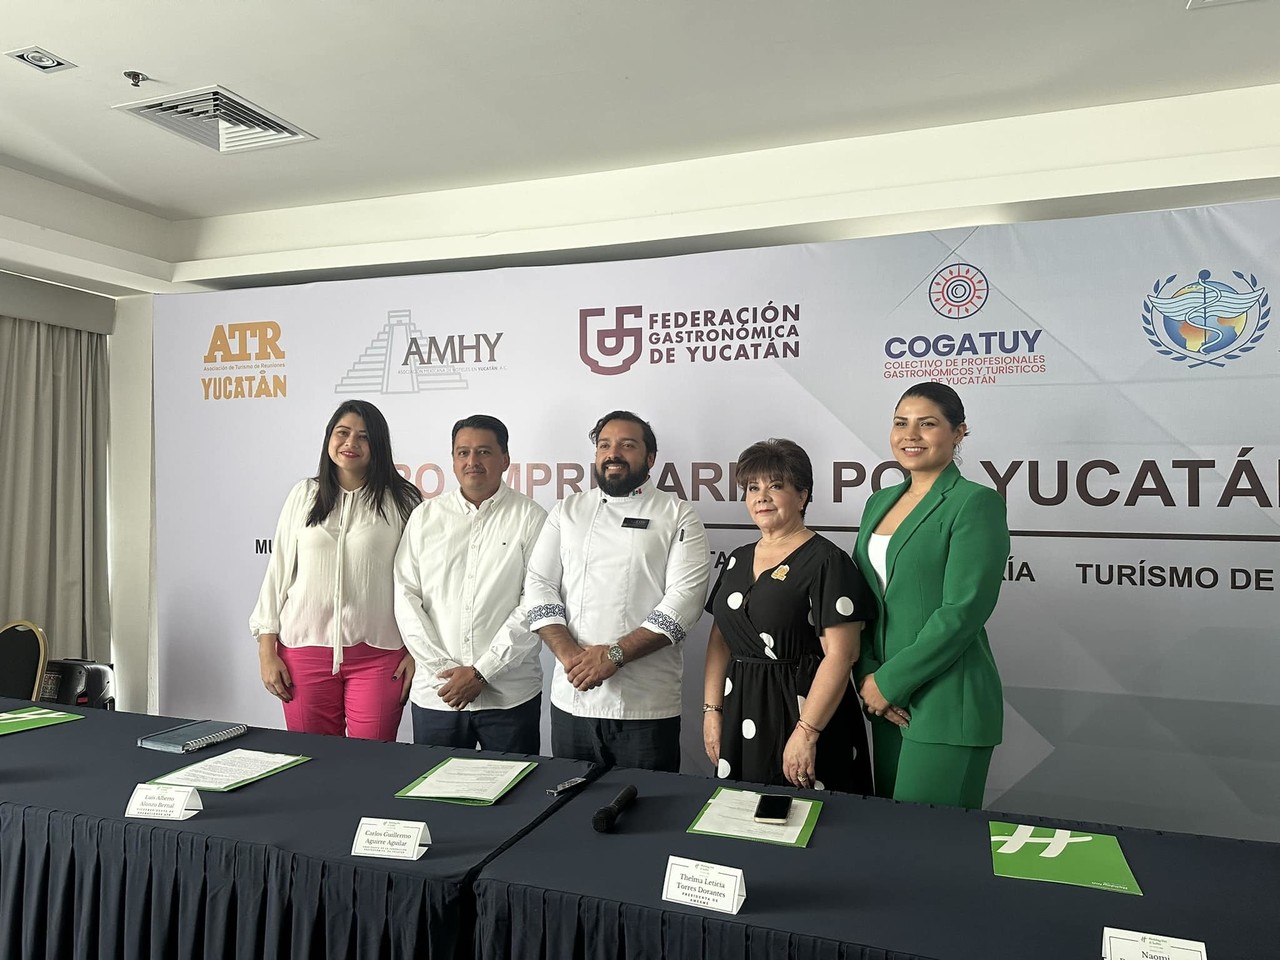 La Federación Gastronómica de Yucatán organizarán el “Foro Empresarial por Yucatán. Foto: Redes sociales